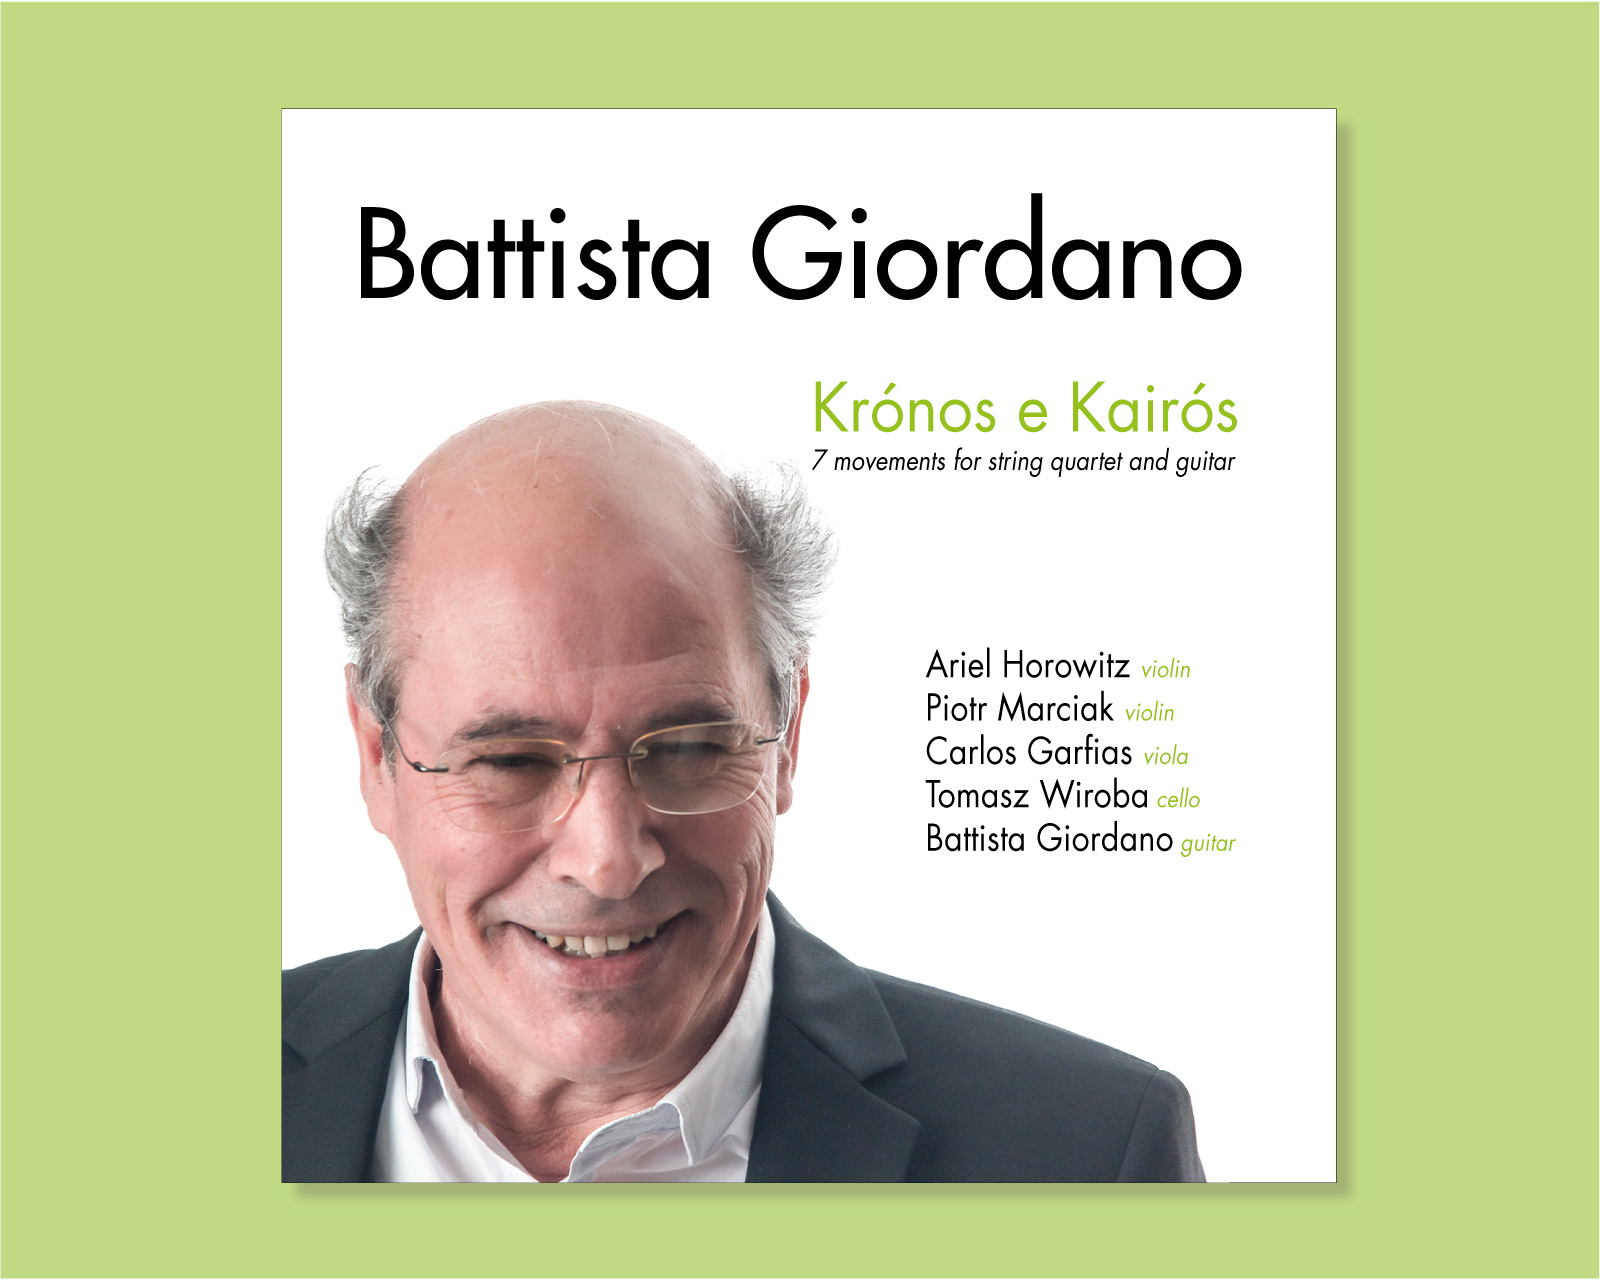 Grafica e fotografia per il CD musicale Kronos e Kairos di Battista Giordano